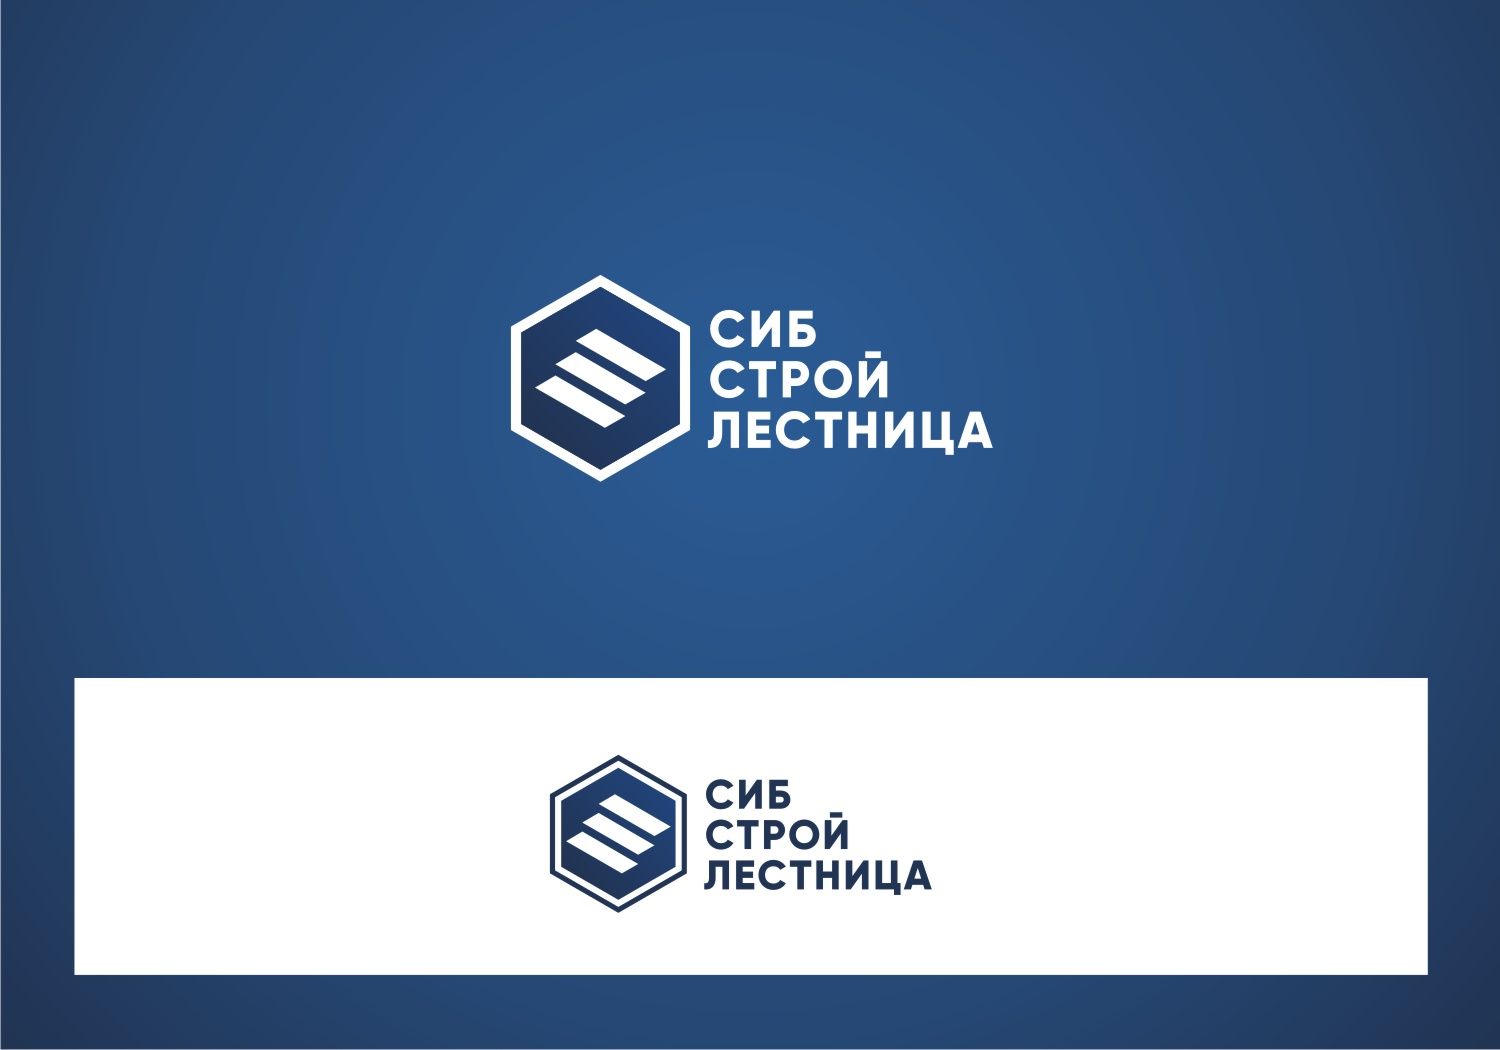 ФС по эскизу логотипа для 